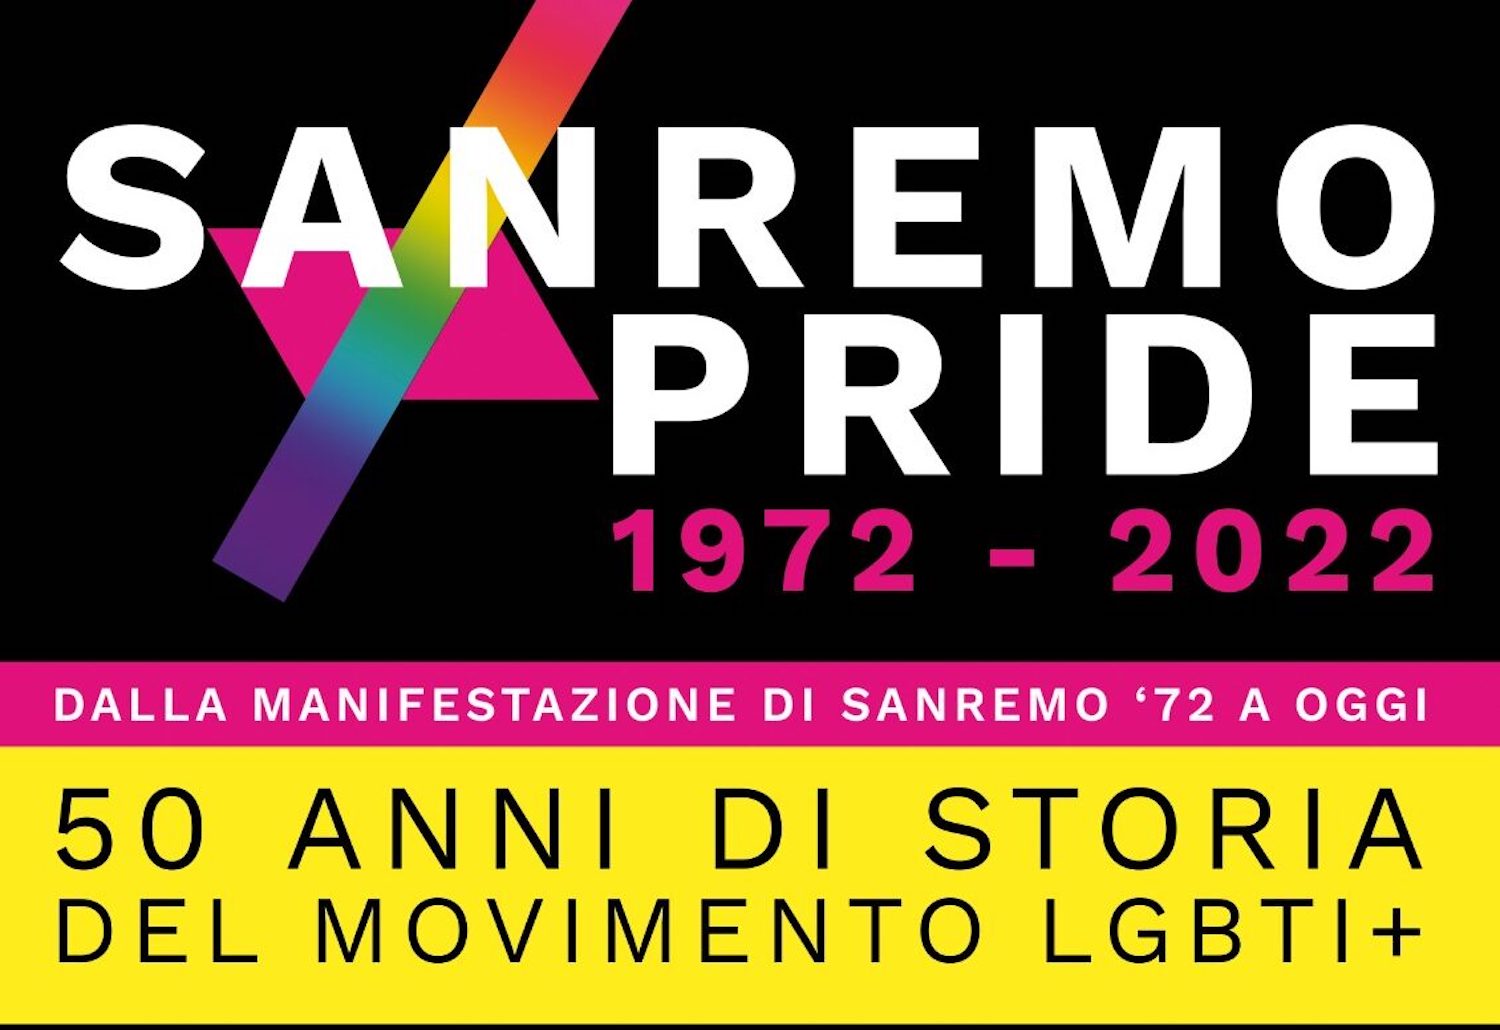 Sanremo 1972: Sanremo Pride 1972-2022 – Una Comunità in mostra”